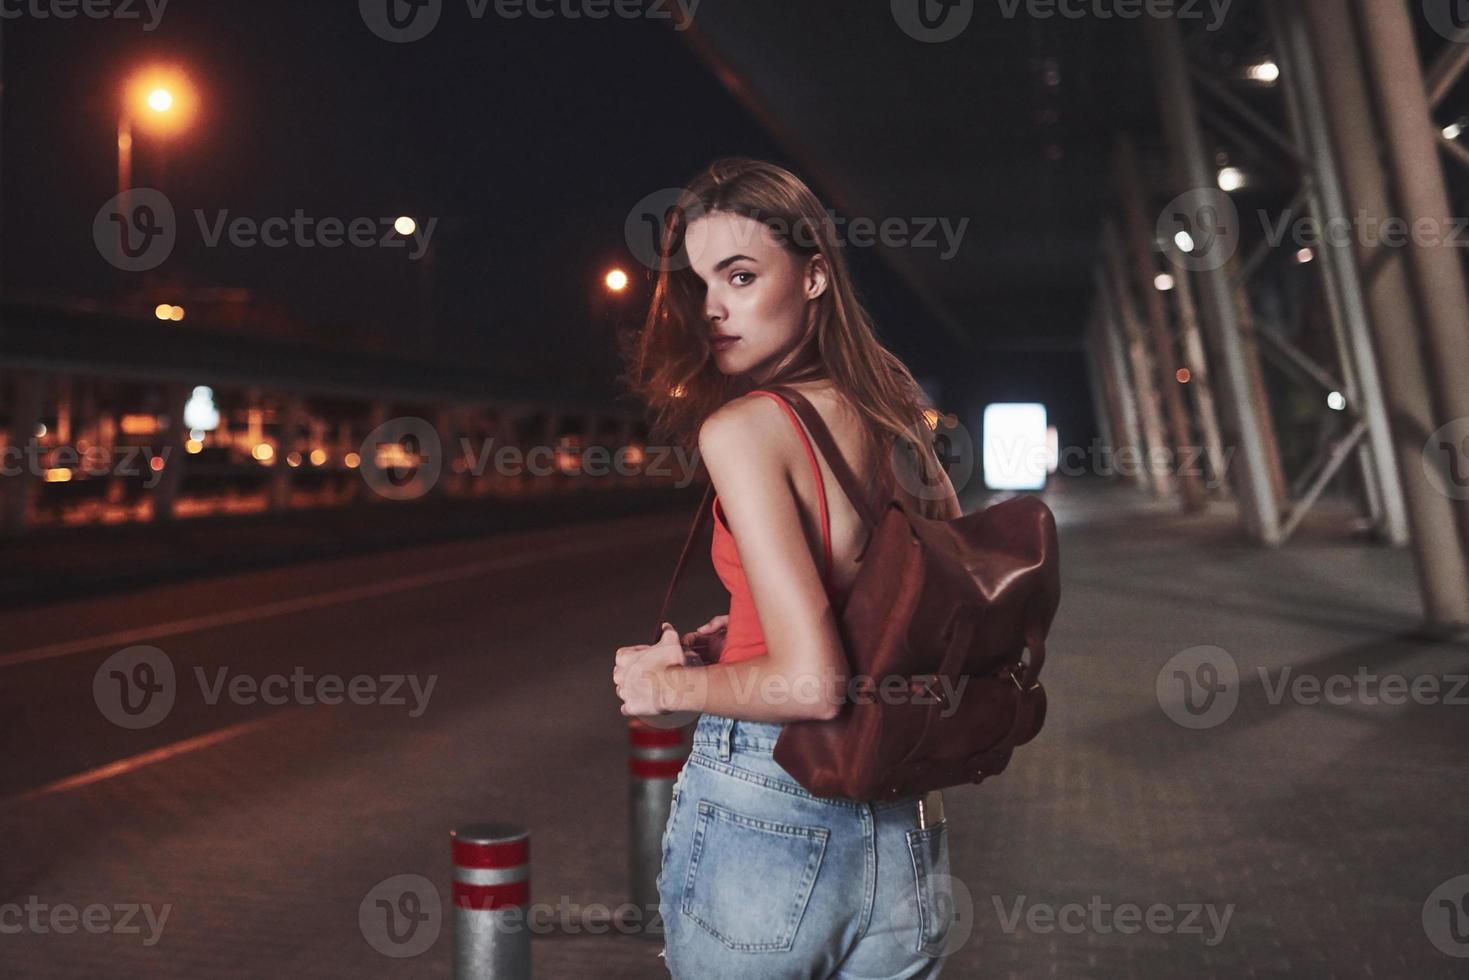 una giovane bella ragazza con uno zaino dietro le spalle si trova per strada vicino a un aeroporto o una stazione ferroviaria in una calda serata estiva. è appena arrivata e aspetta un taxi o i suoi amici foto